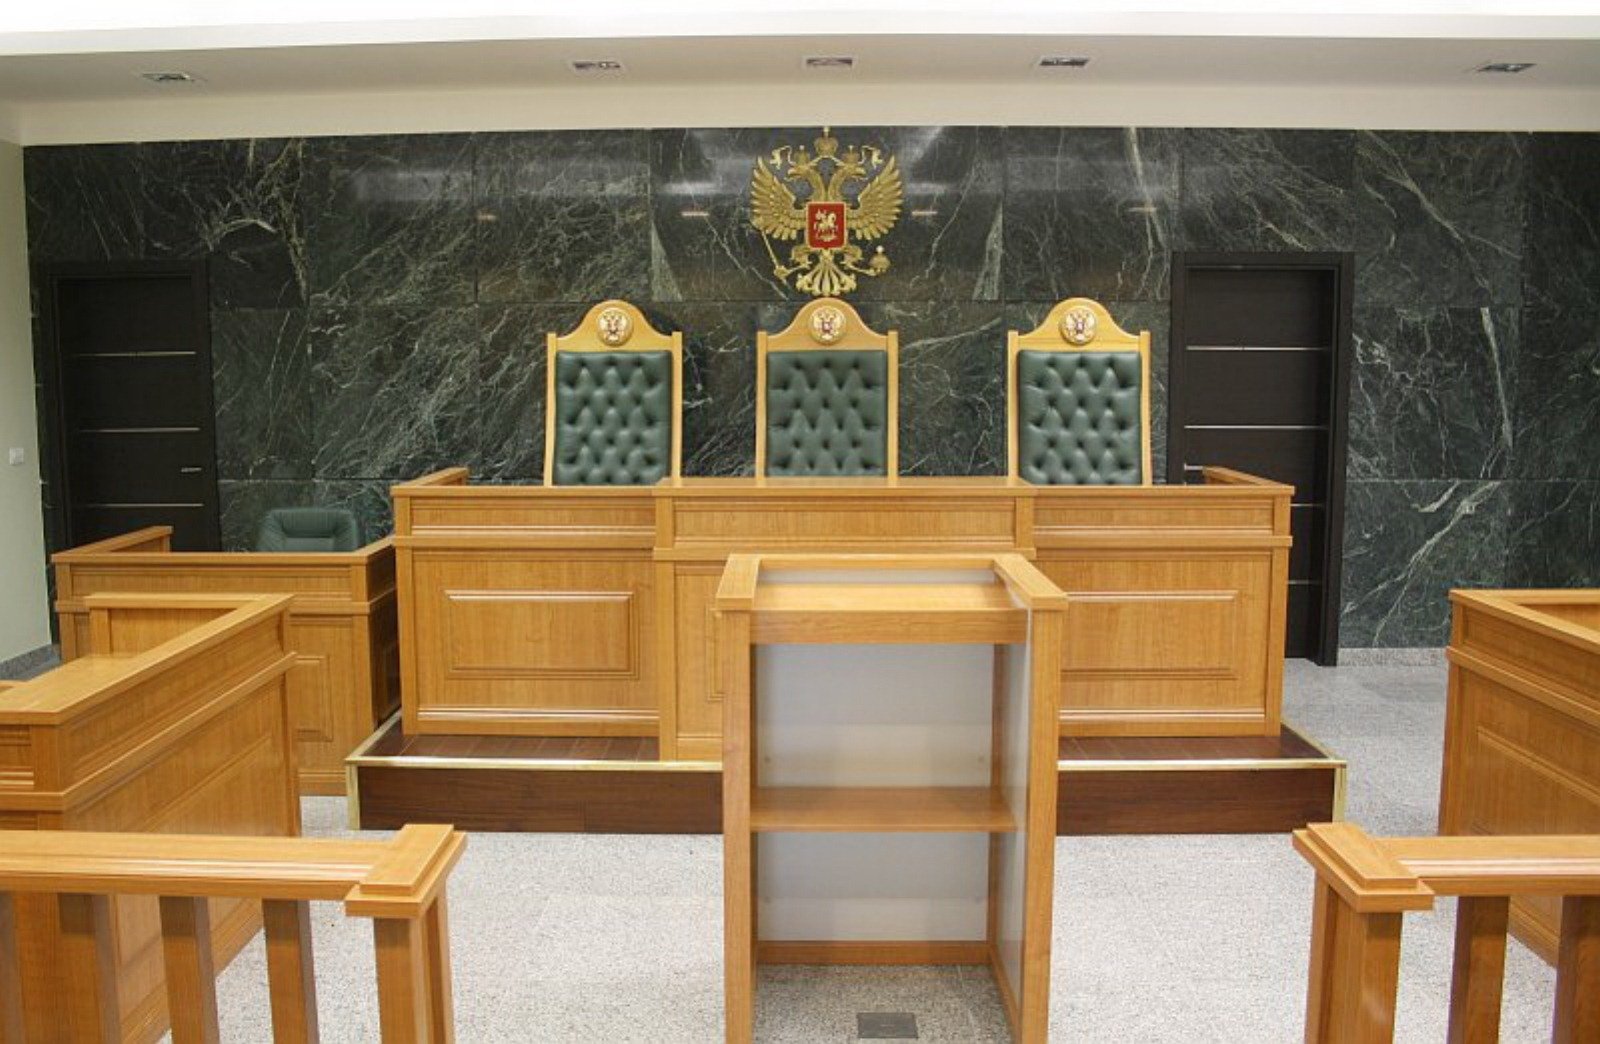 Судебно каб. Зал заседания суда. Мебель для судебных заседаний. Мебель для зала судебного заседания. Мебель для залов судебных заседаний.